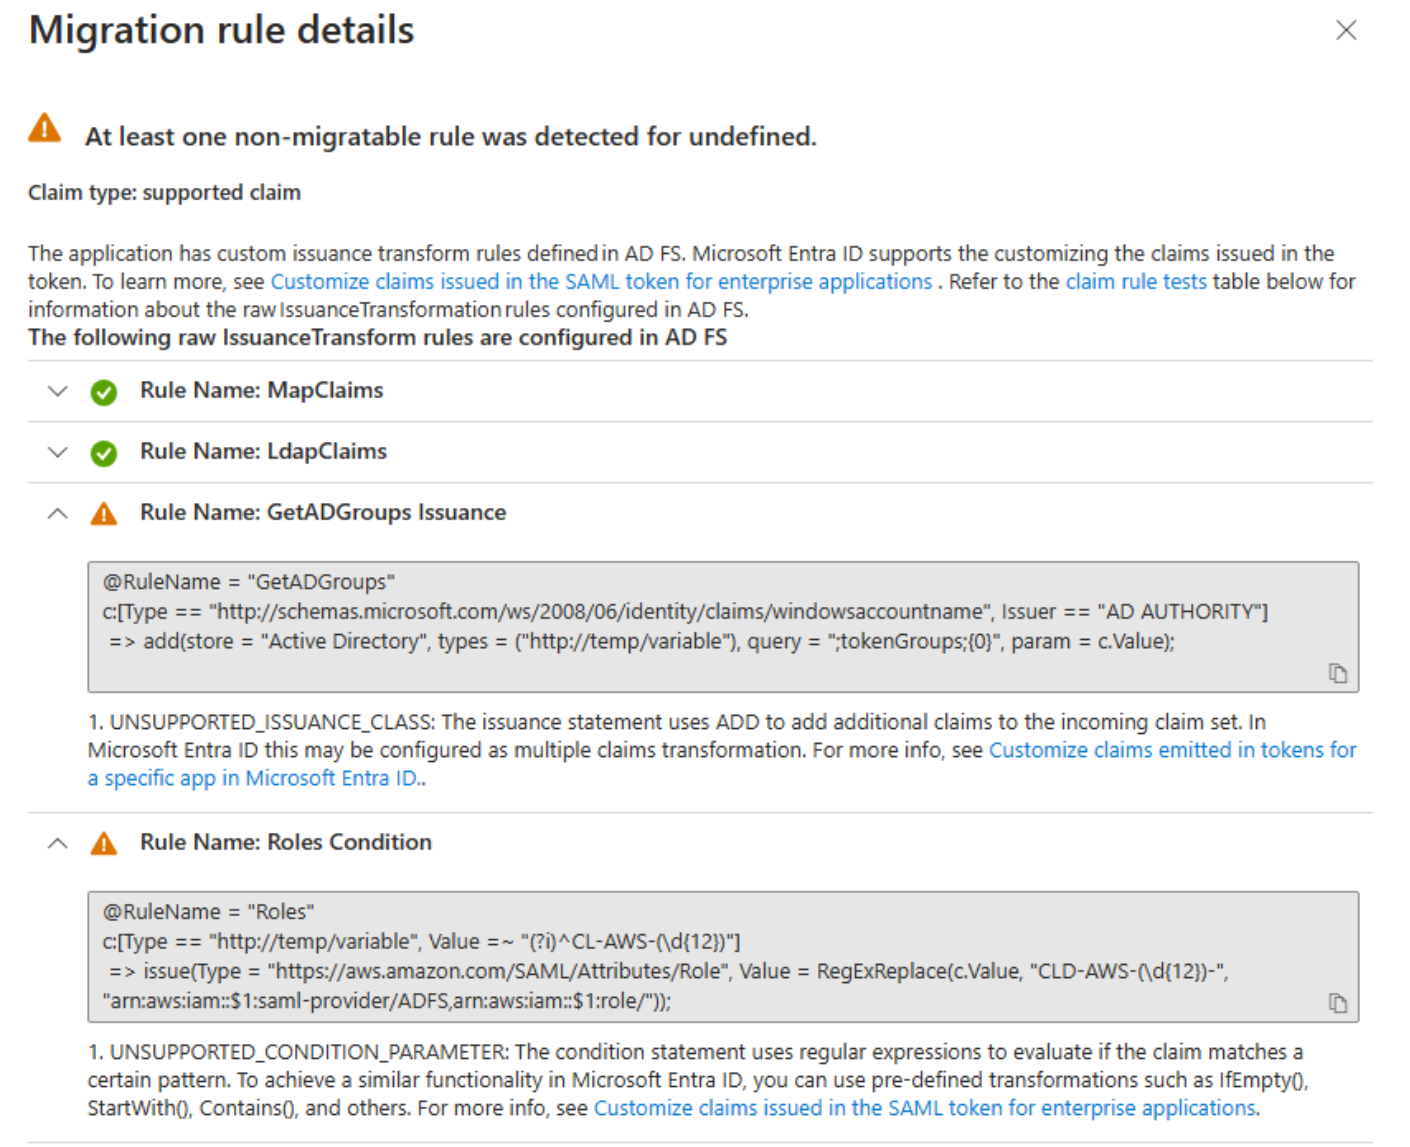 Captura de tela do painel de detalhes das regras de migração de aplicativo do AD FS.